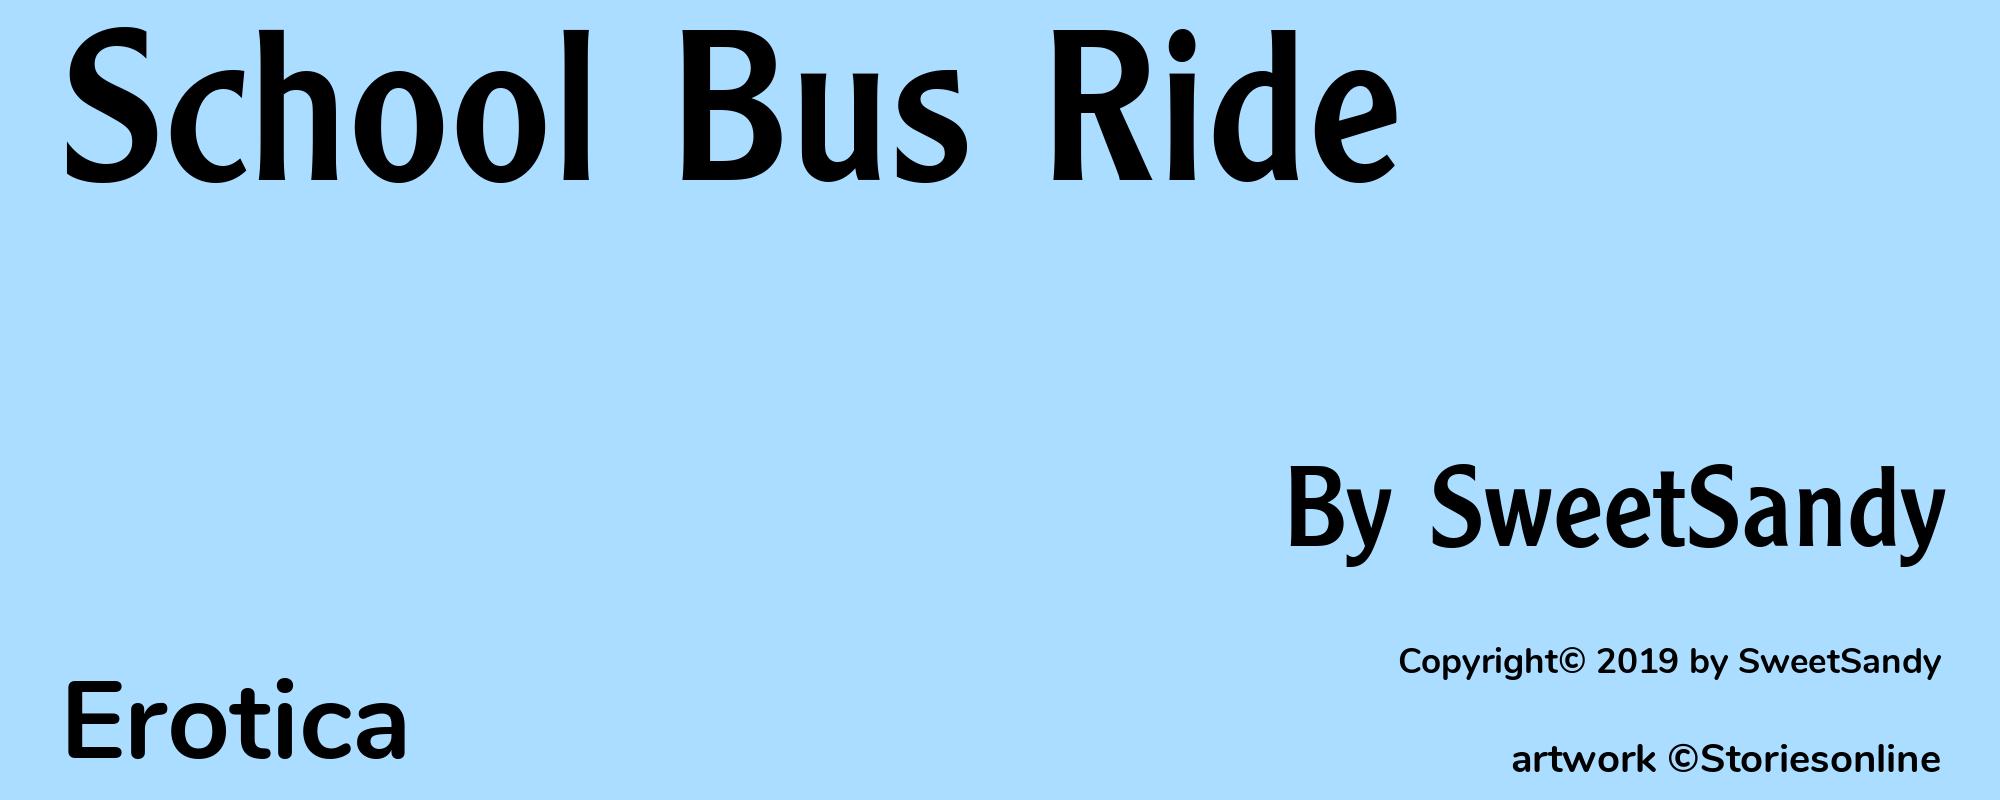 School Bus Ride - Cover